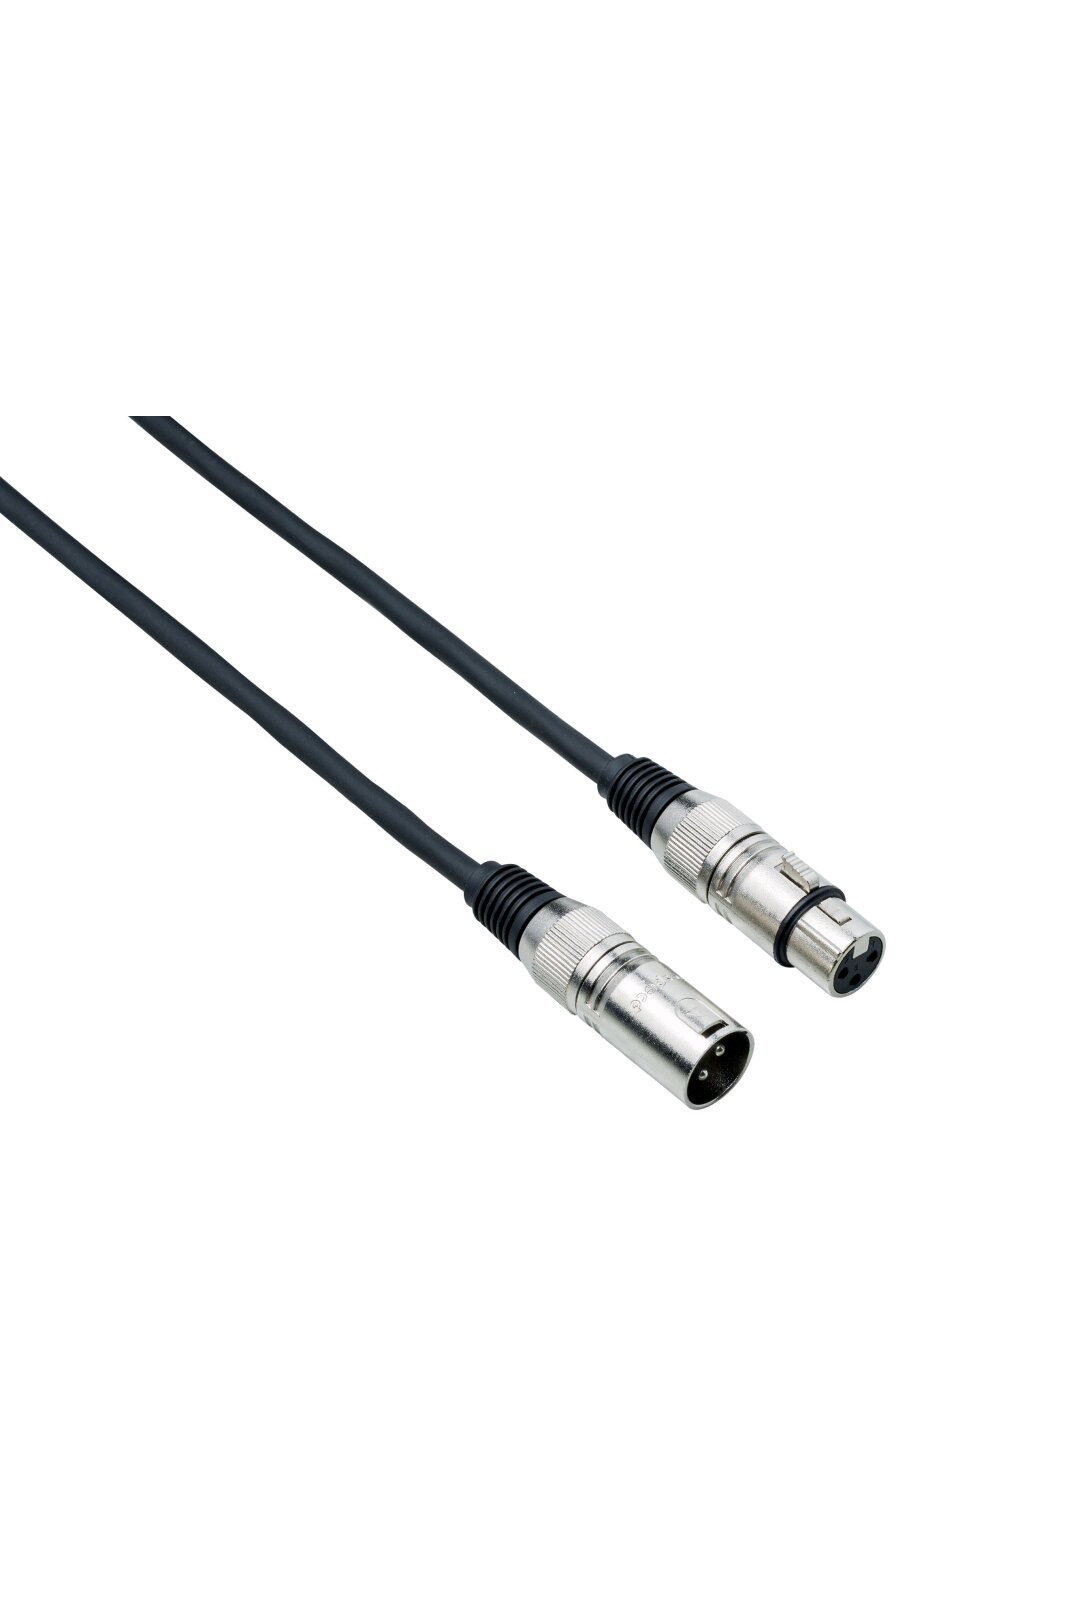 Bespeco DMX001 DMX cable 1 m : photo 1